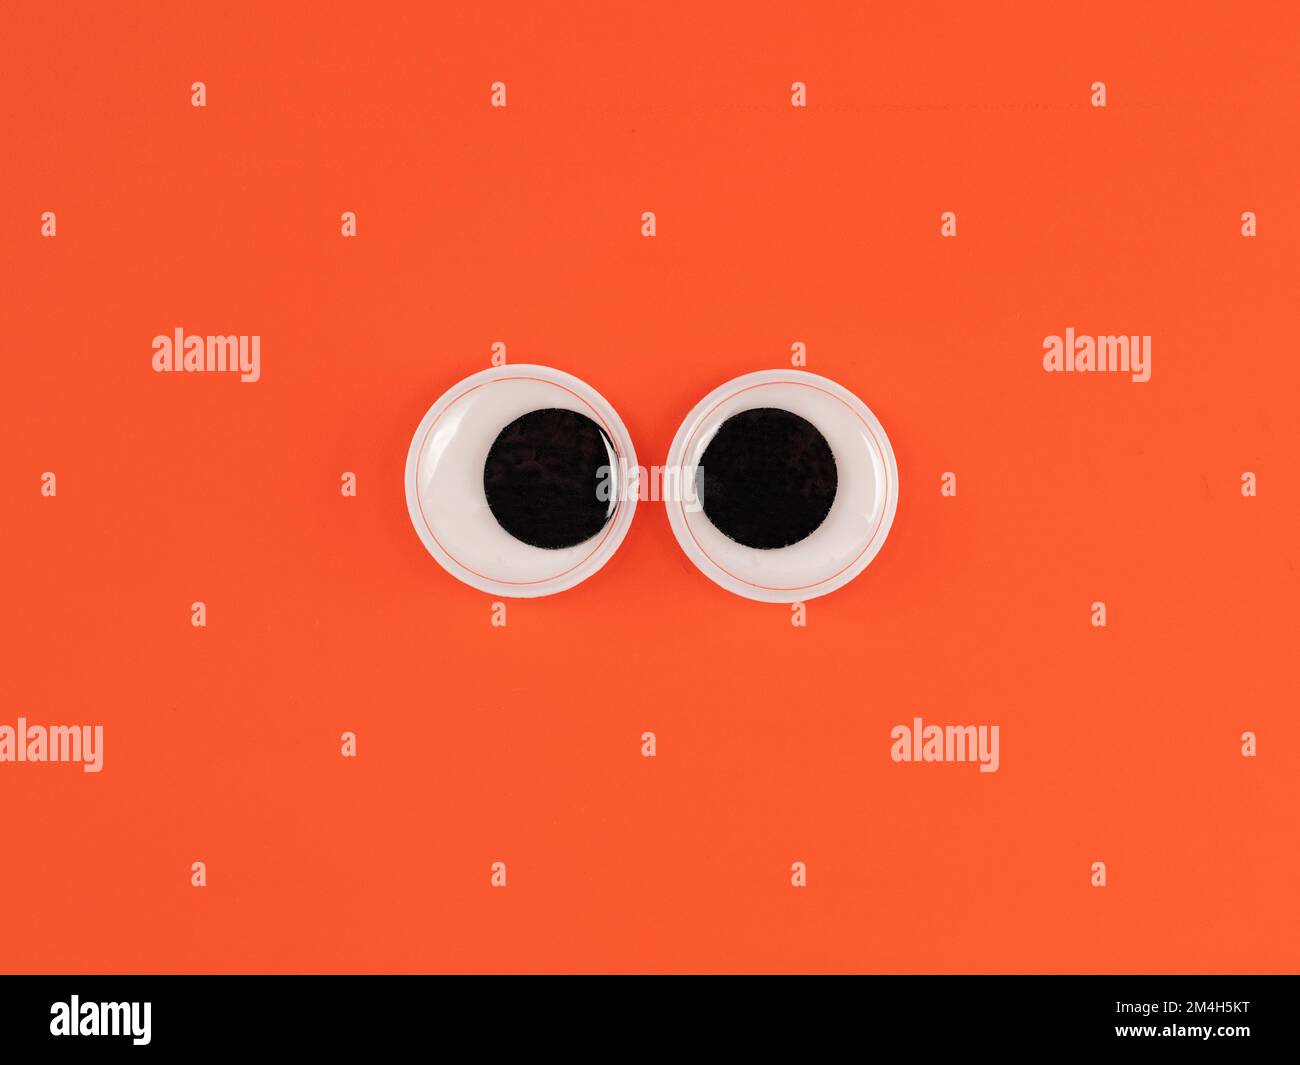 Adorable yeux googly drôle isolé sur fond orange vif copie espace logo Banque D'Images